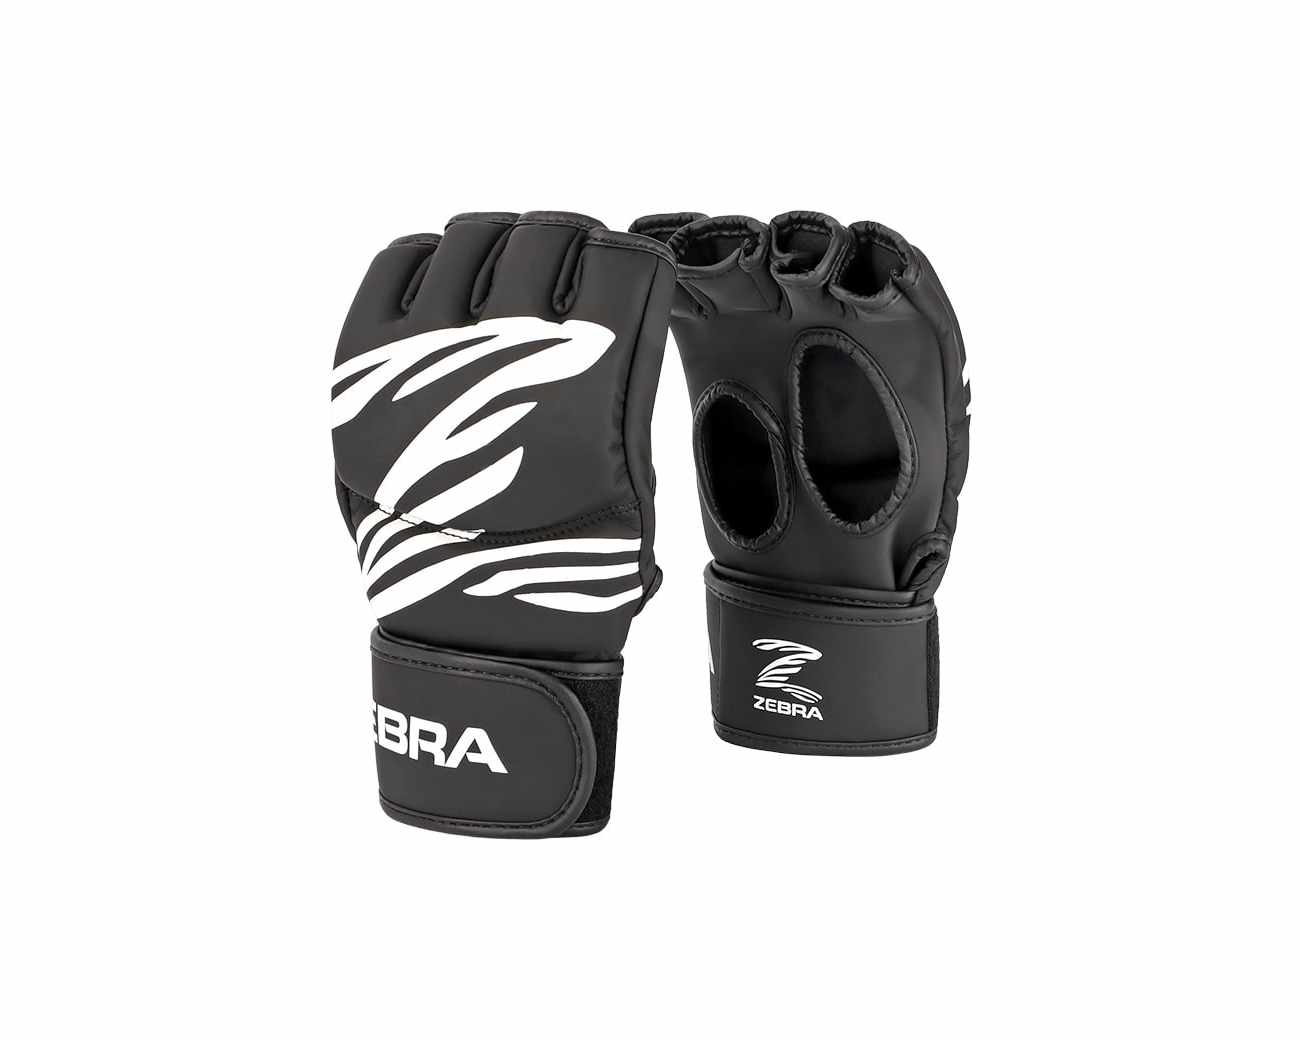 ZEBRA Fitness Training Gloves Image